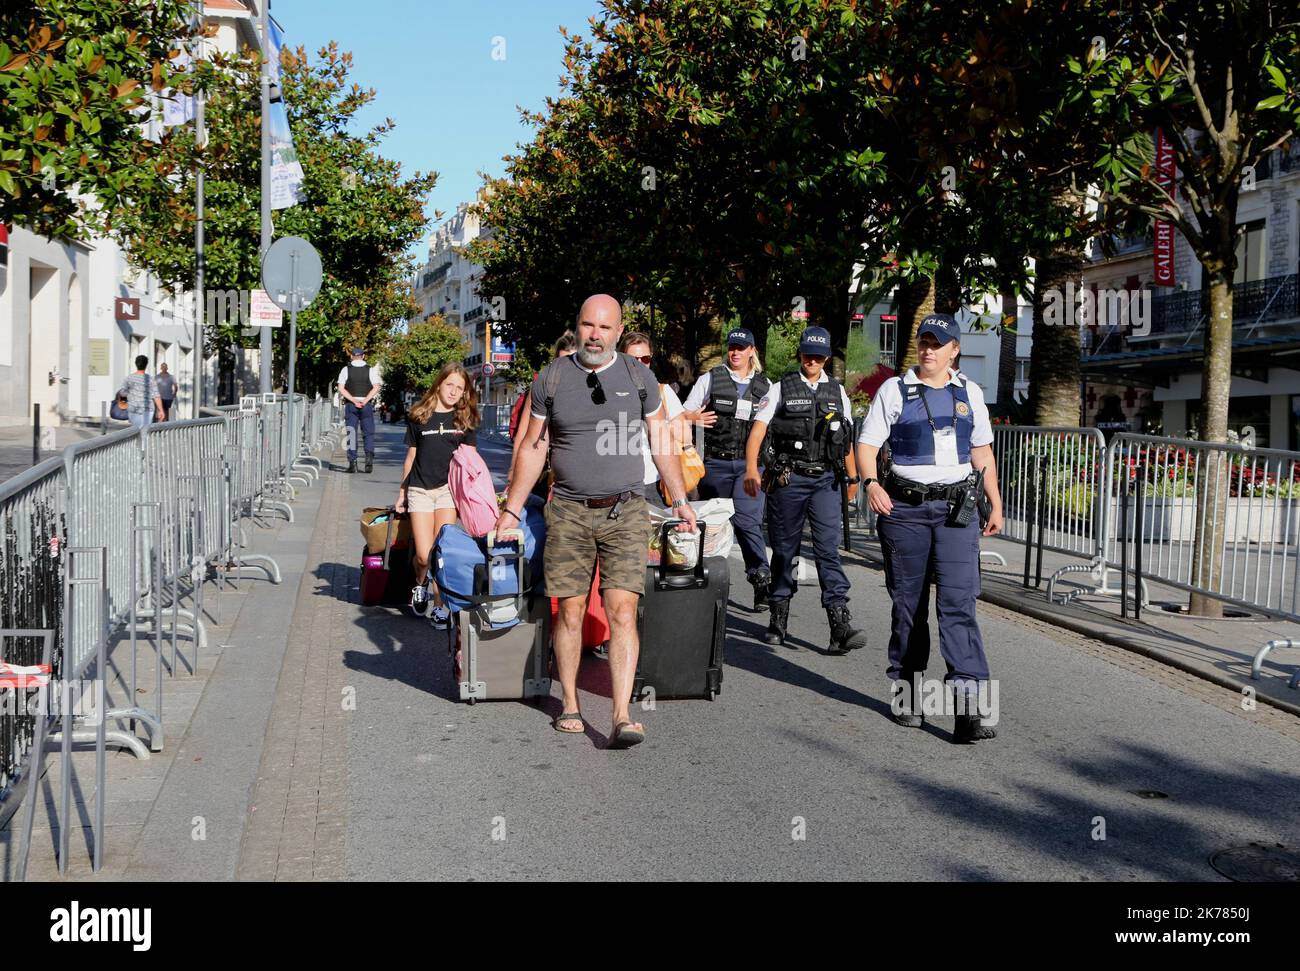 sommet du G7 Biarritz sous le cloche les touristes qui quittent leur emplacement partie à pied escortés par la police - le sommet de G7 sur 25 août 2019 à Biarritz, France Banque D'Images